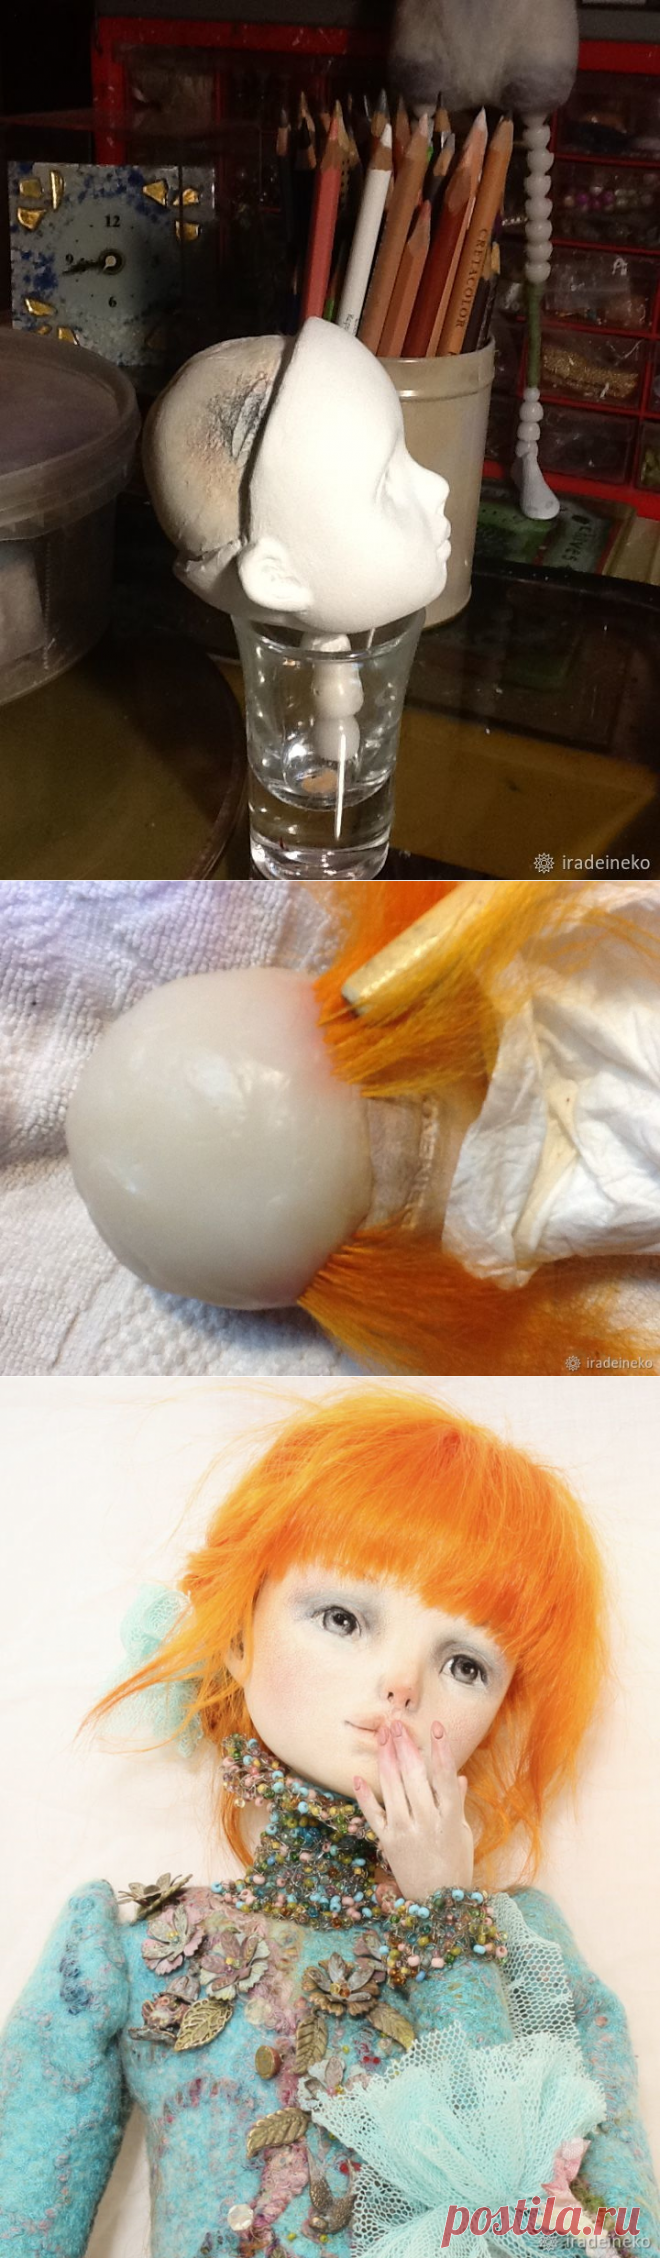 «Вживляем» волосы в кукольную голову - Ярмарка Мастеров - ручная работа, handmade